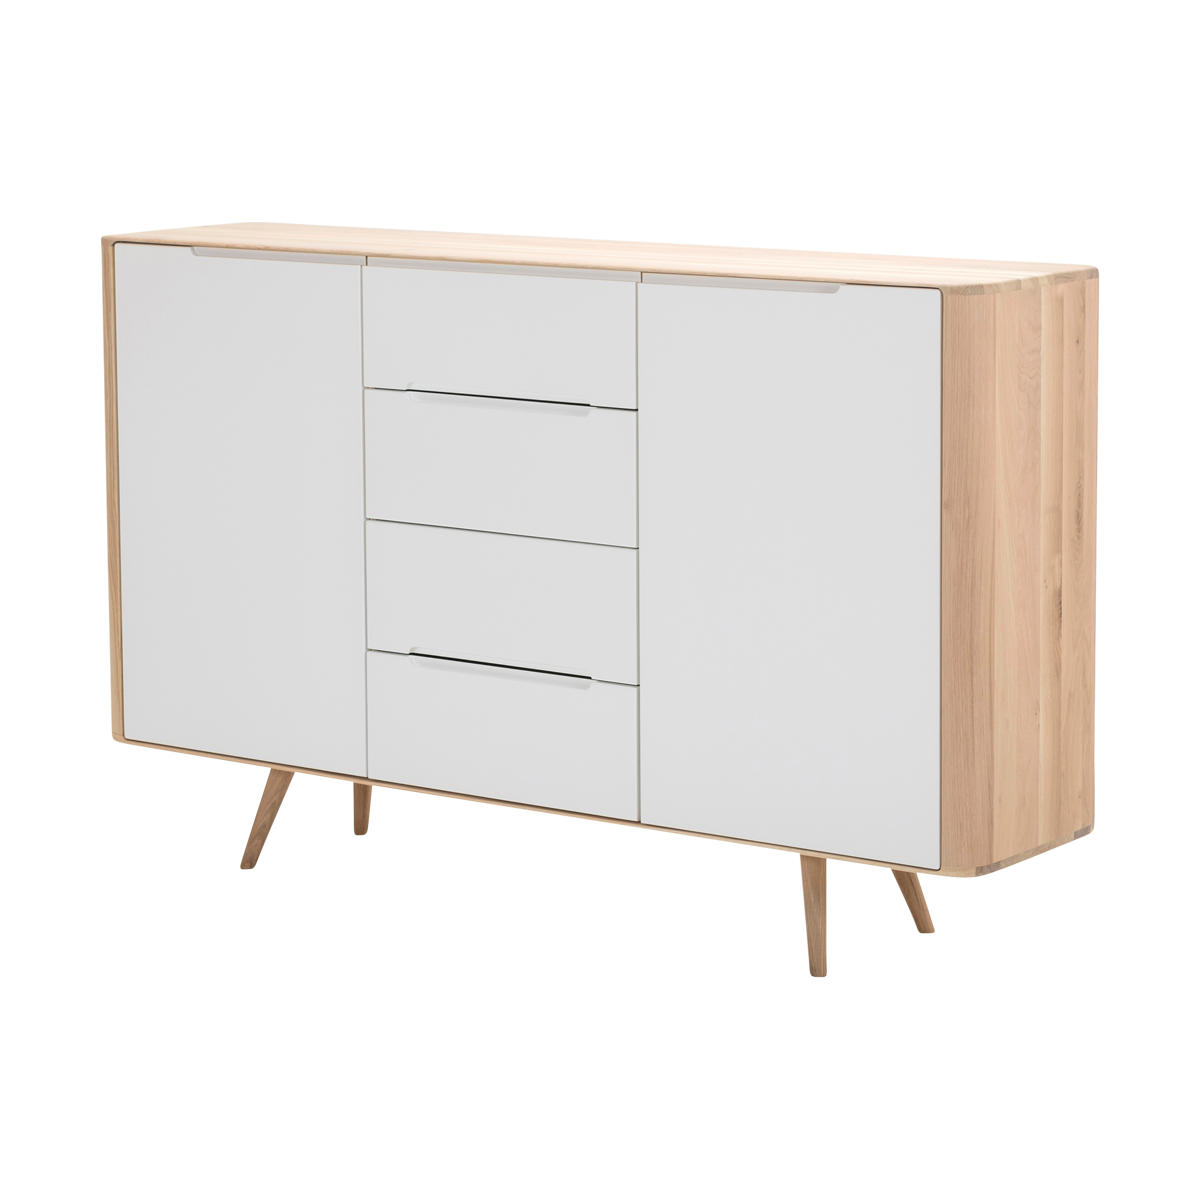 Ena dresser 180 houten ladekast whitewash - 180 x 110 cm